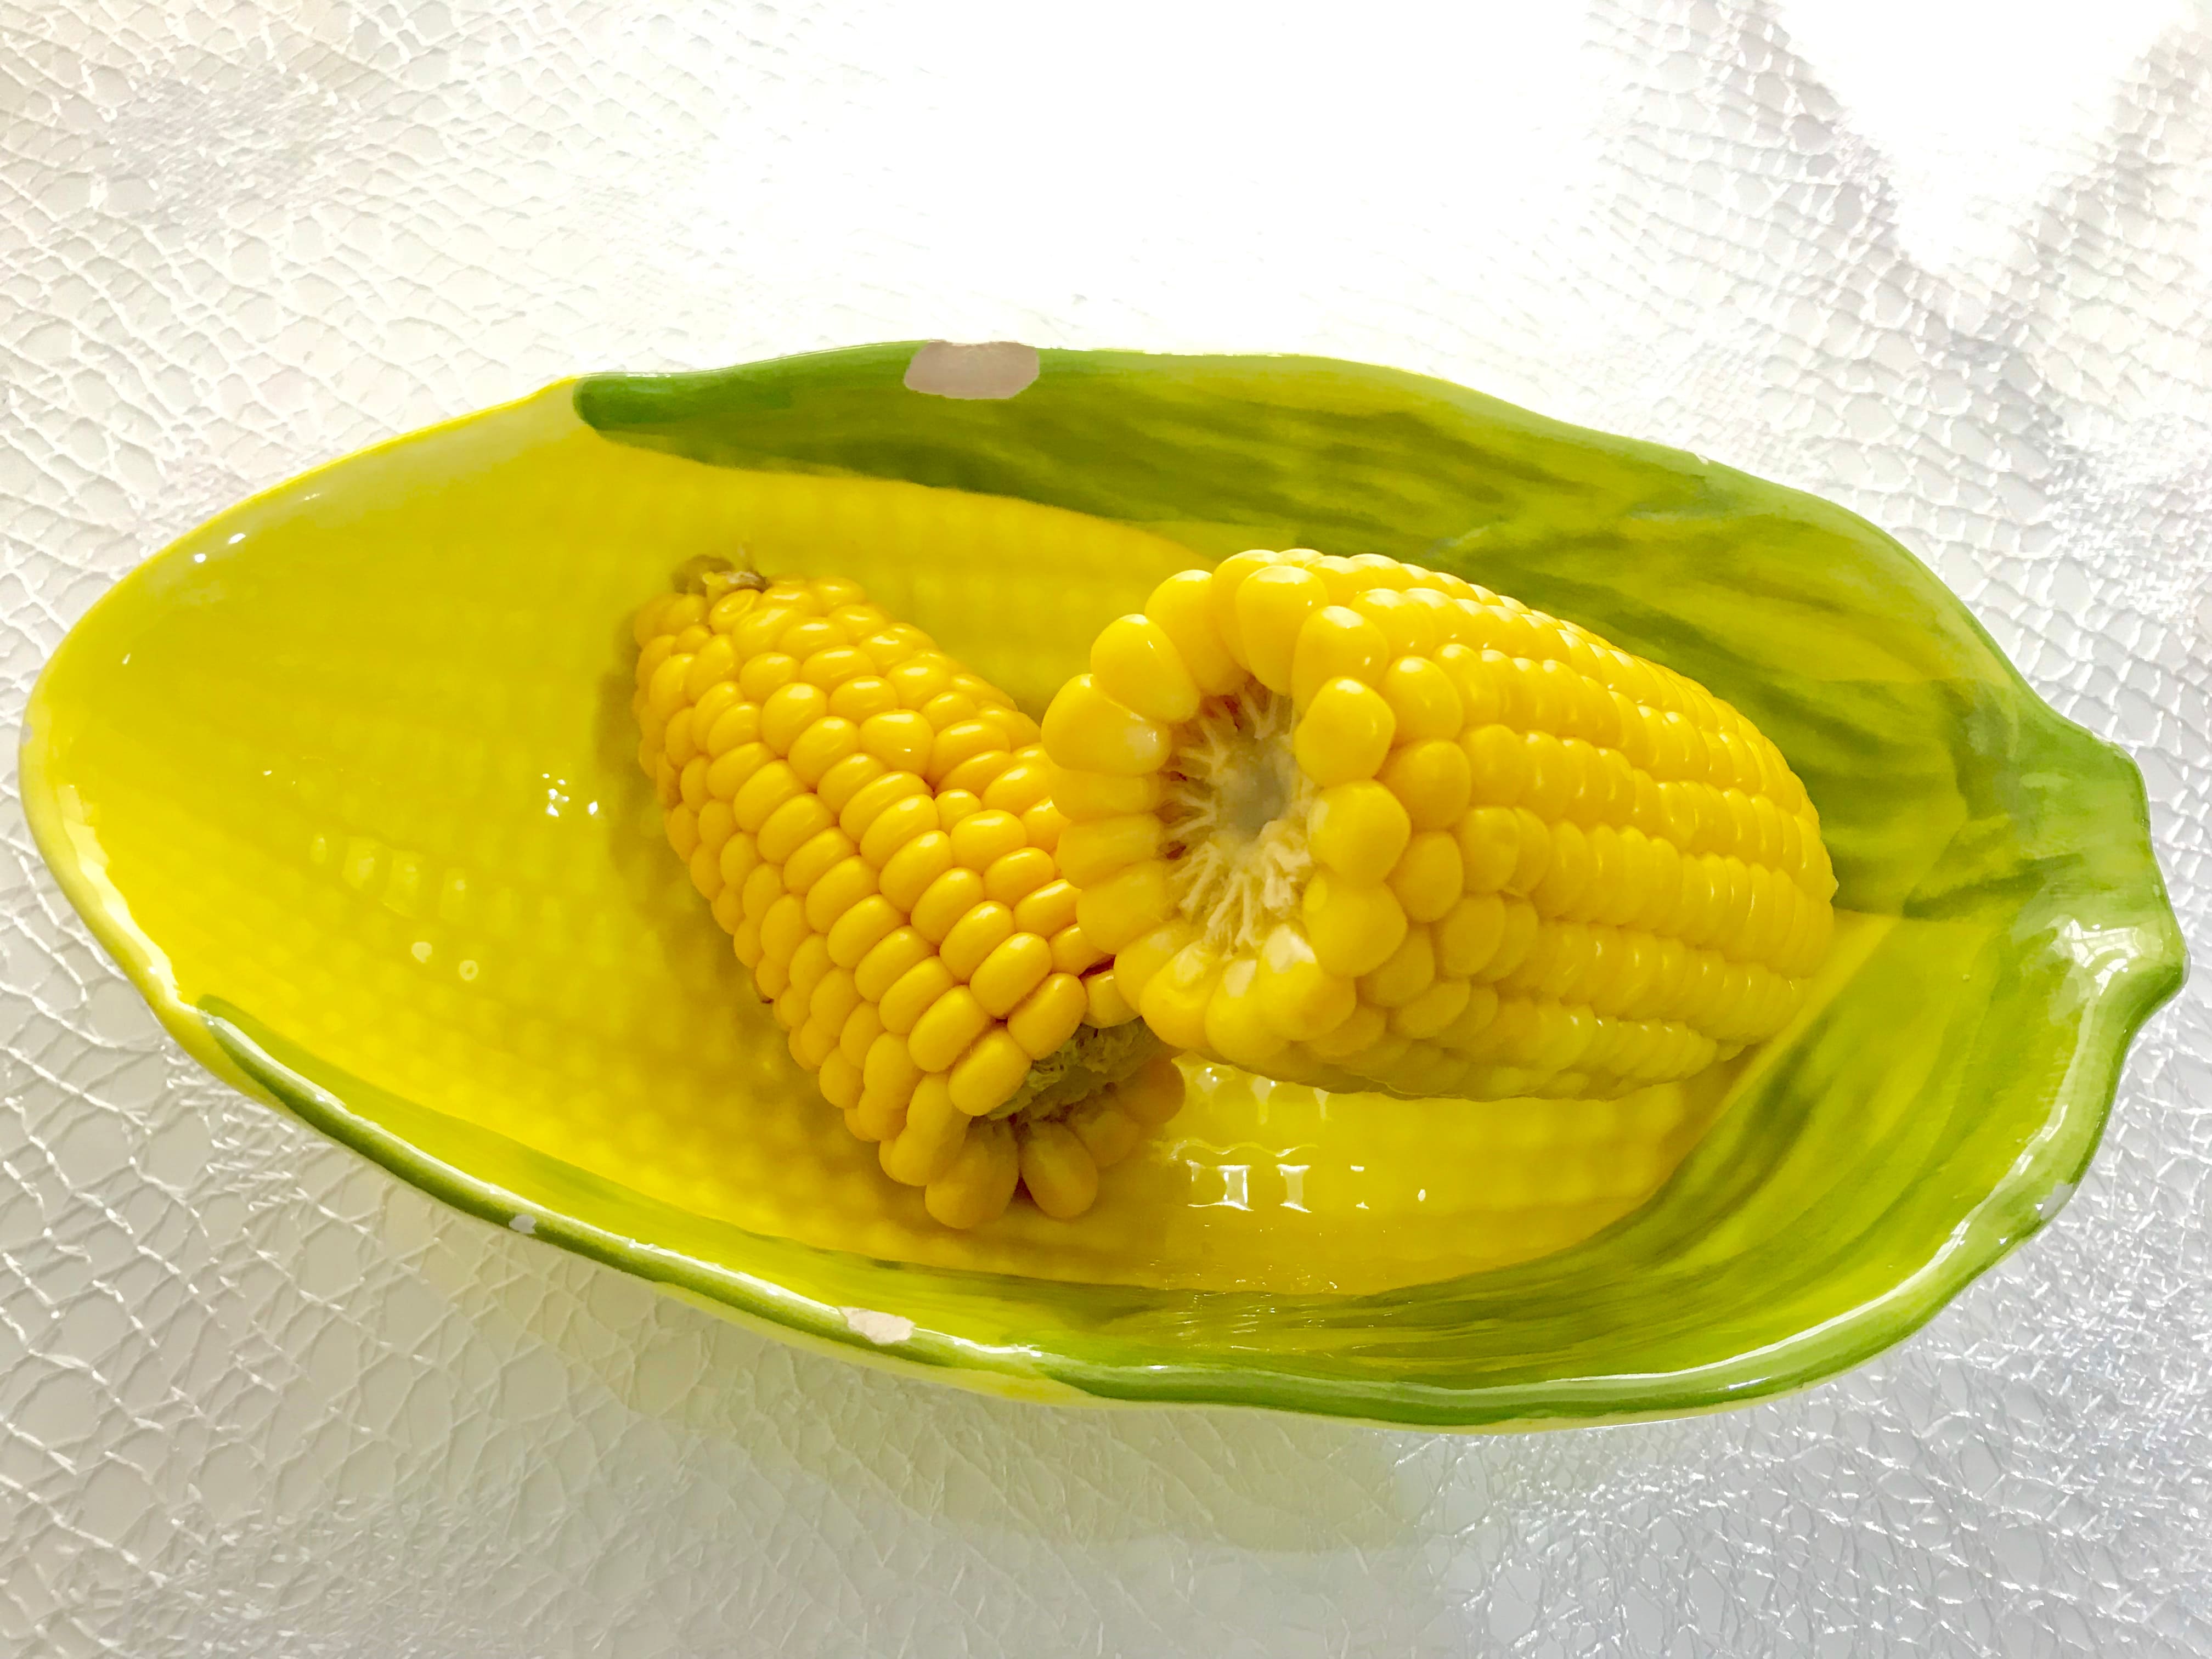 Imagem de um milho para remeter ao texto que traz dicas sobre como montar um carrinho de milho cozido